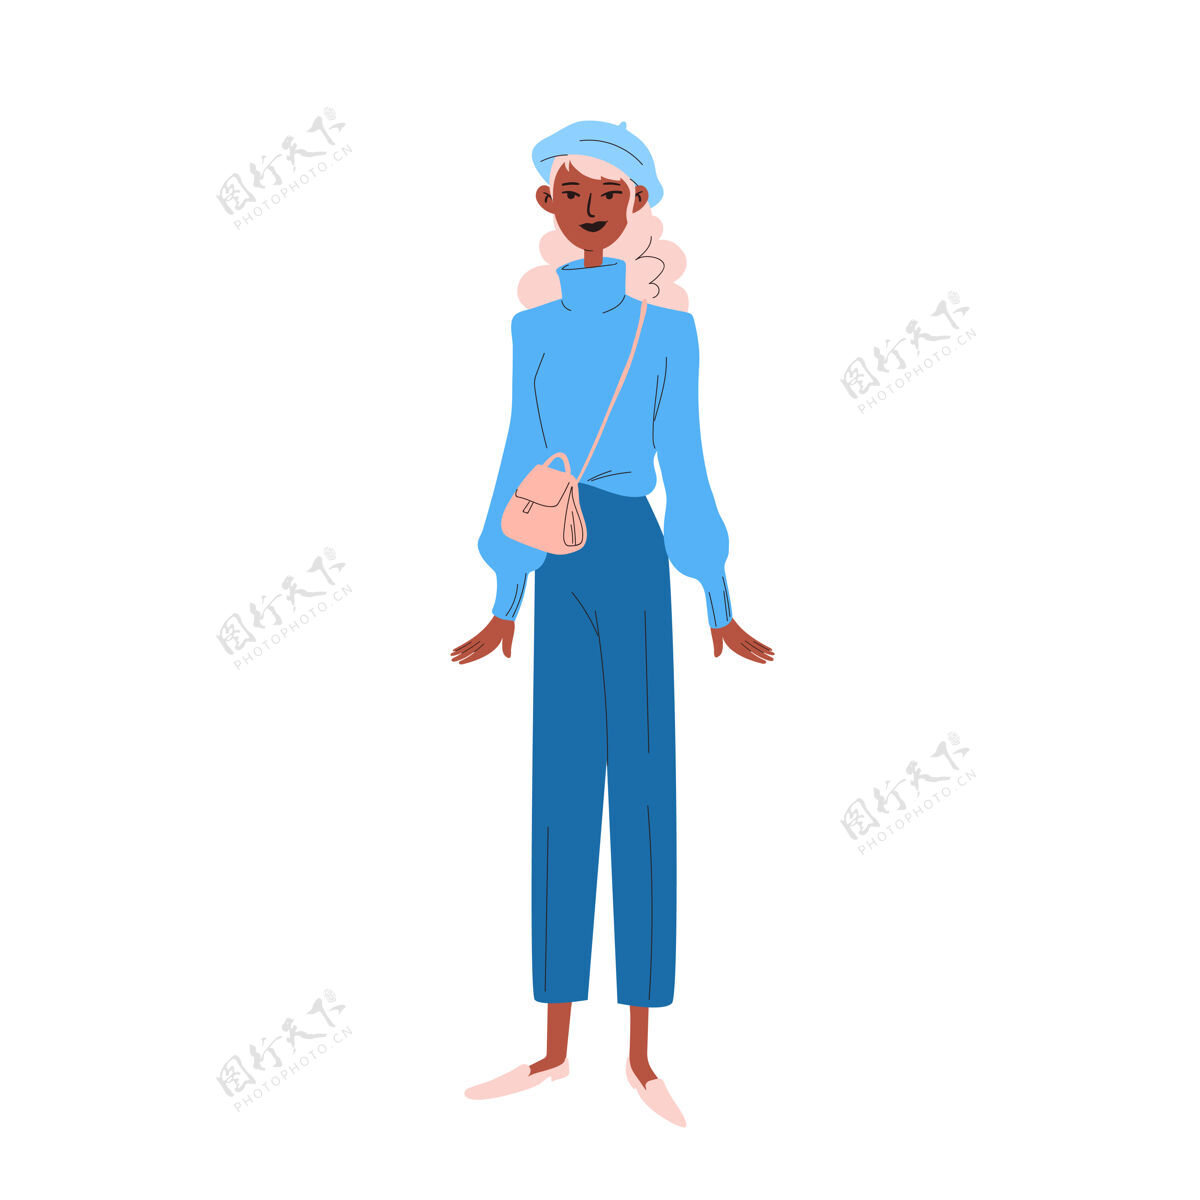 时尚一个穿着蓝色衣服的年轻女子 头戴贝雷帽 肩上挎着一个小手提包公寓休闲毛衣